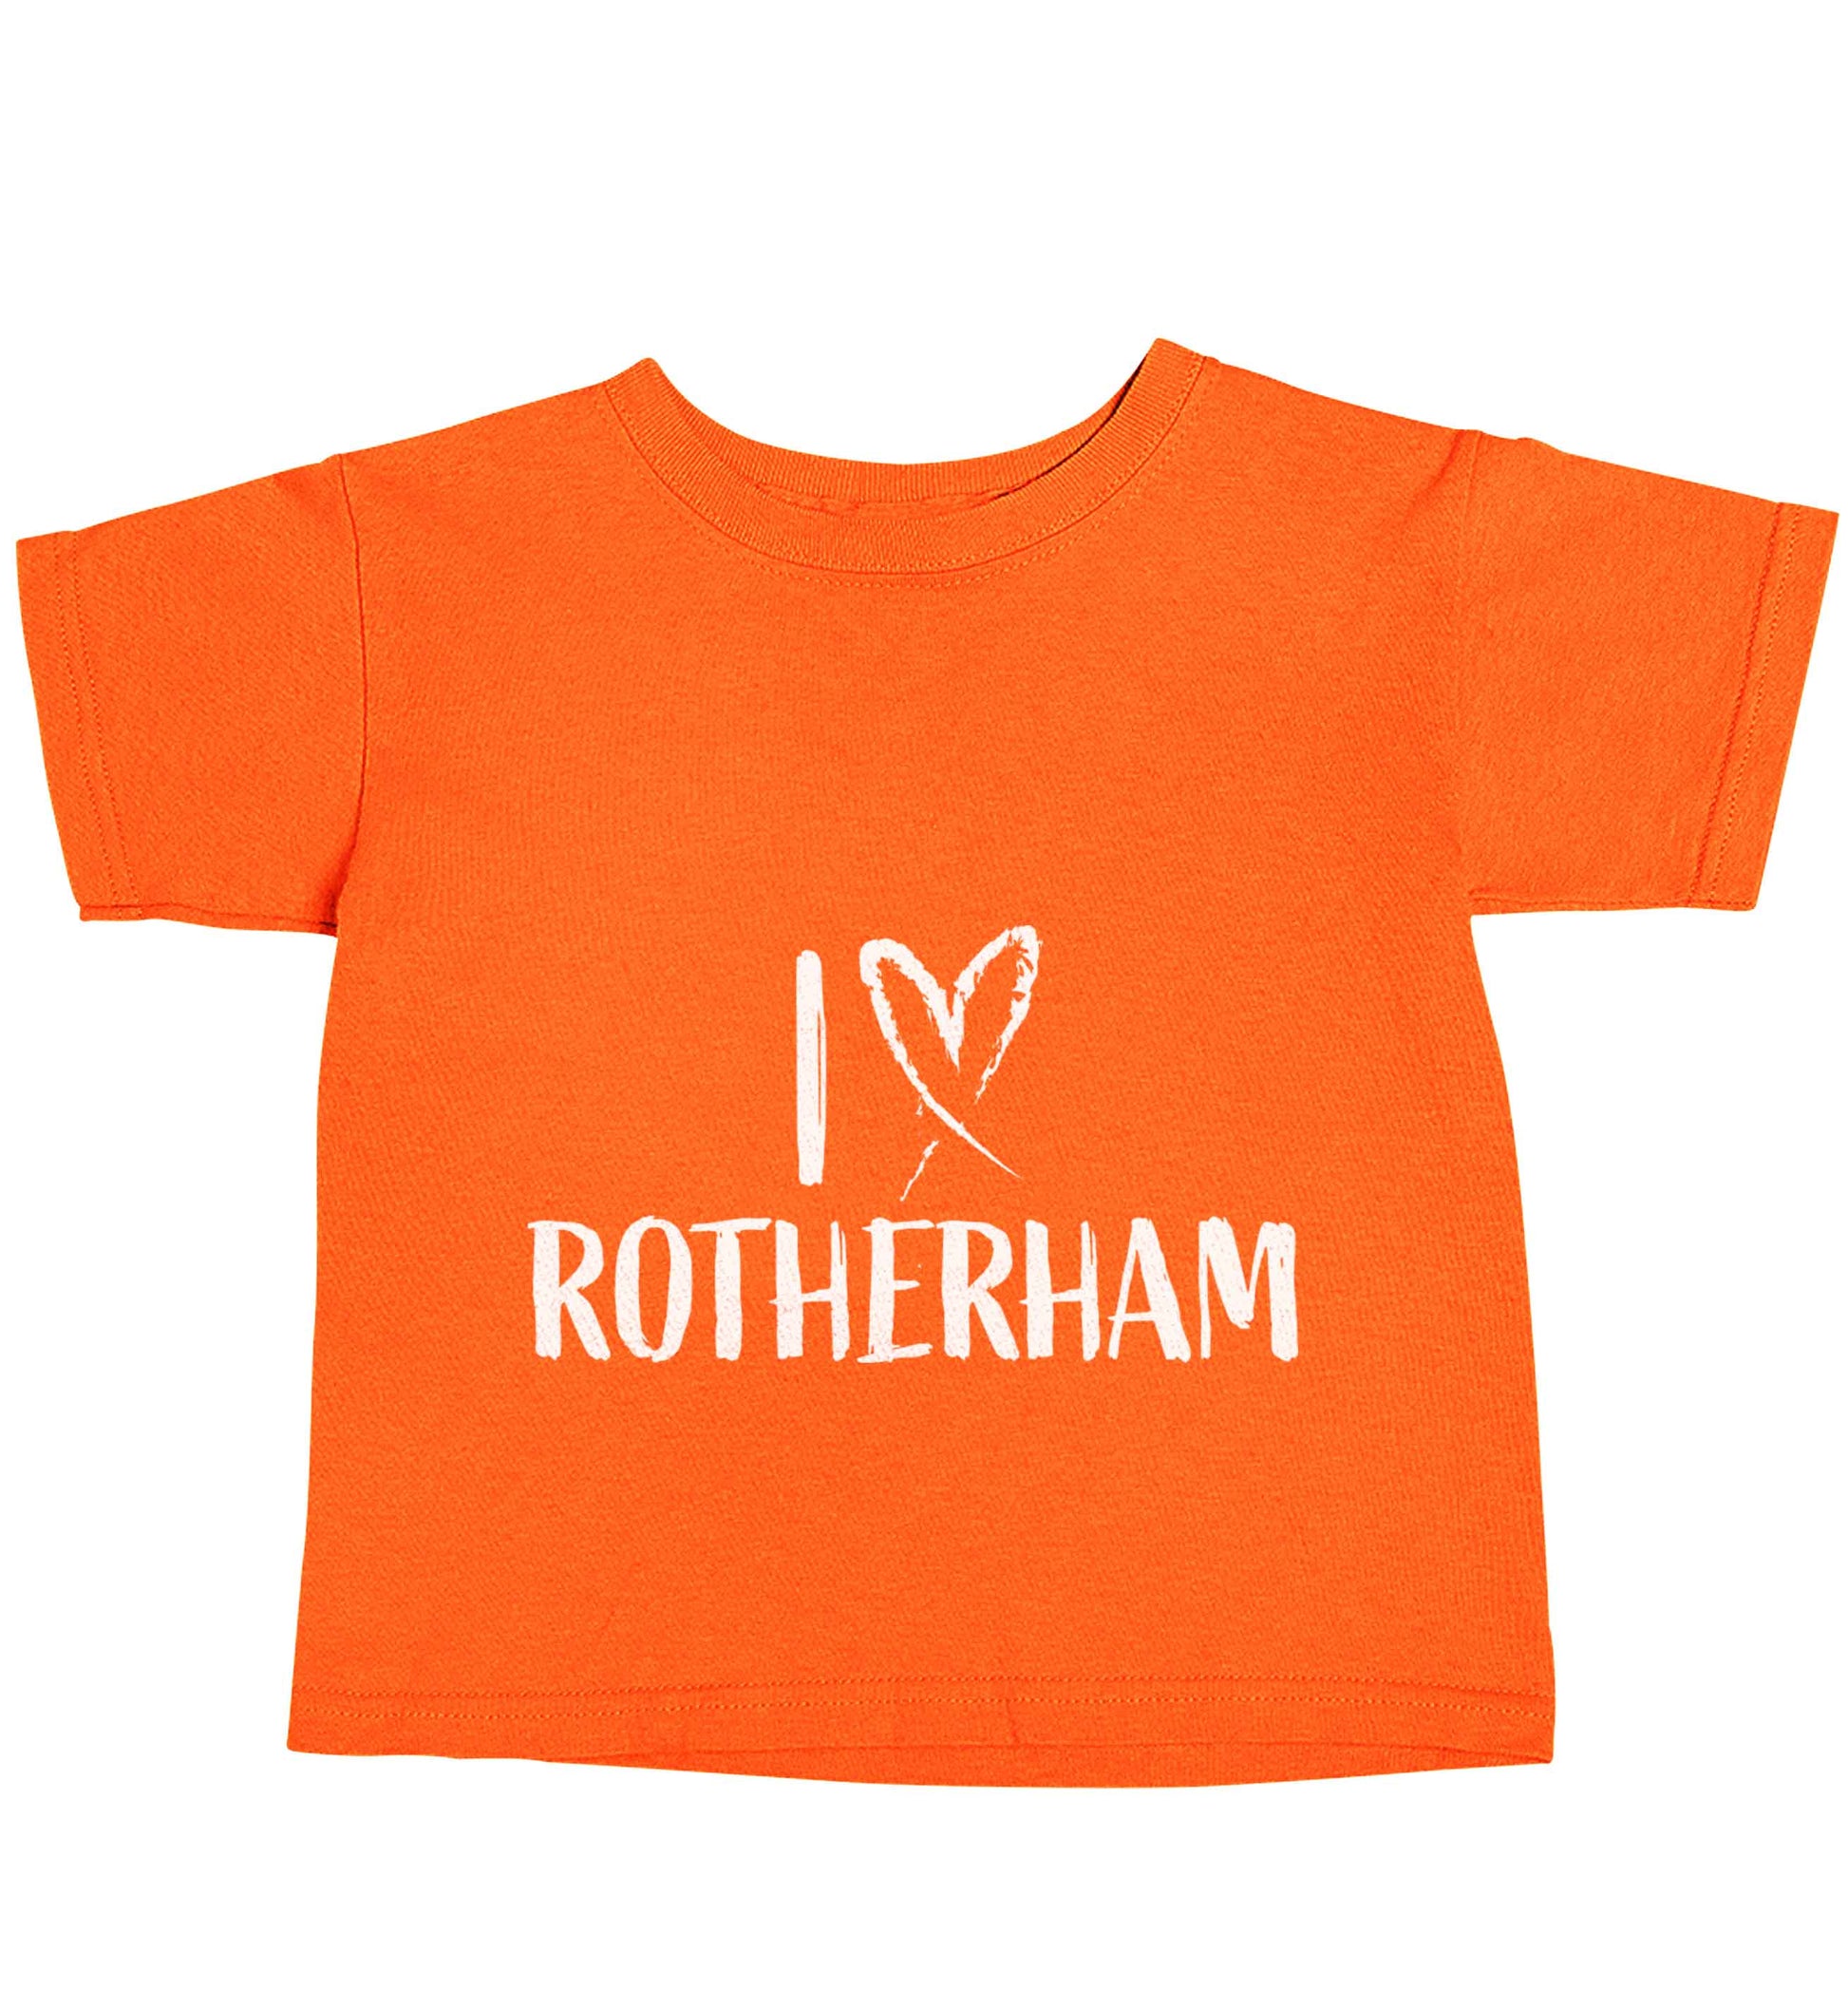 I love Rotherham orange baby toddler Tshirt 2 Years